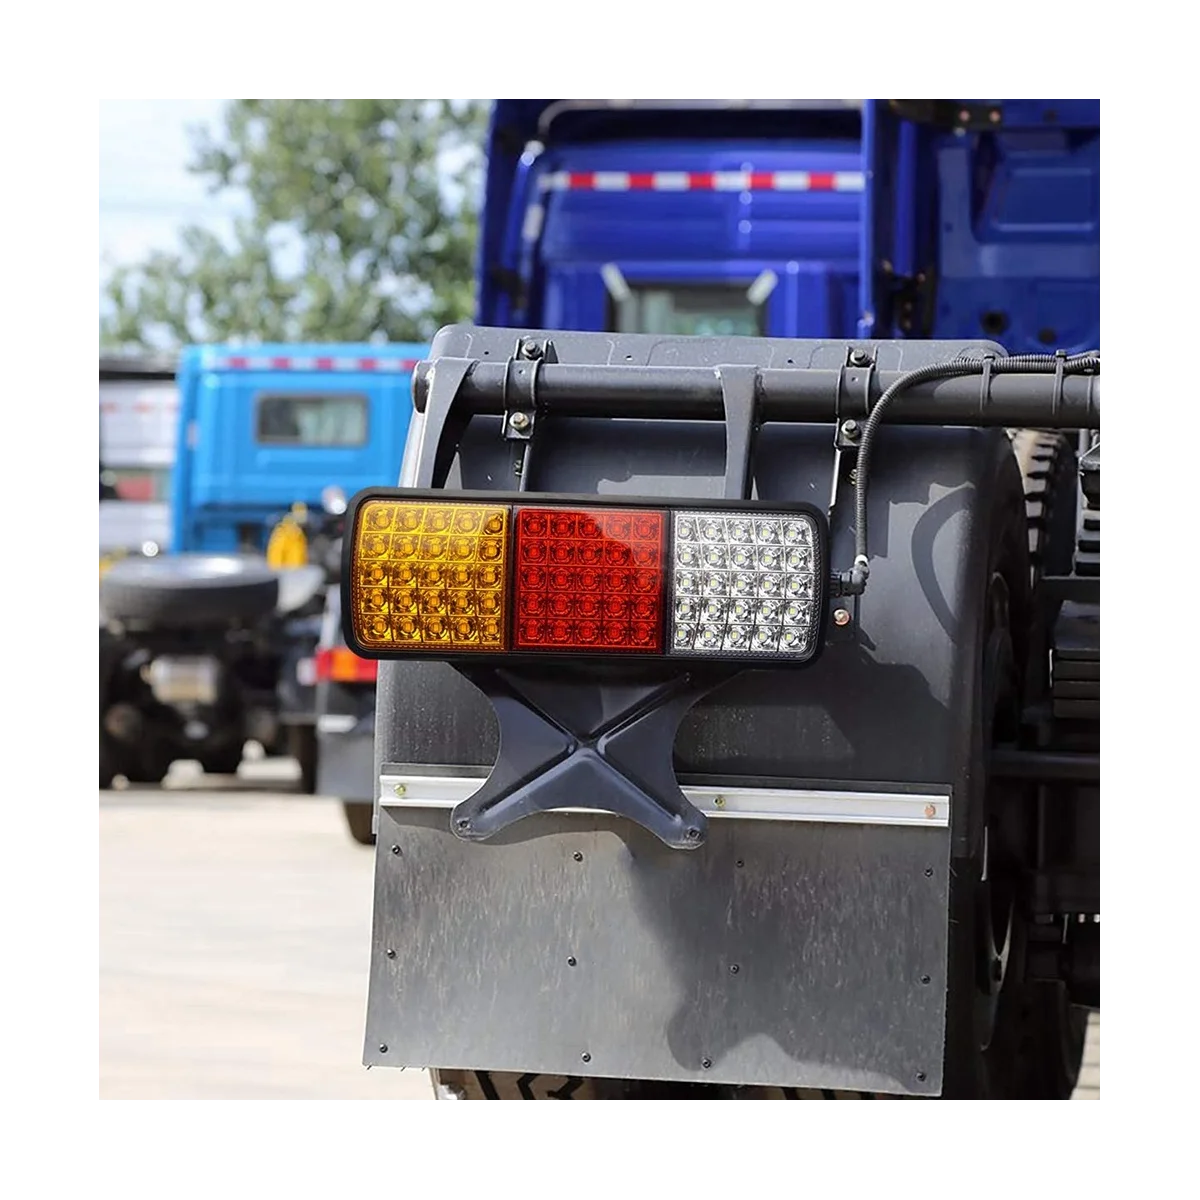 2шт водонепроницаемых задних фонарей 12V 75 LED для грузовика RV фургона автобуса прицепа Сигнальный индикатор Стоп Сигналы заднего хода